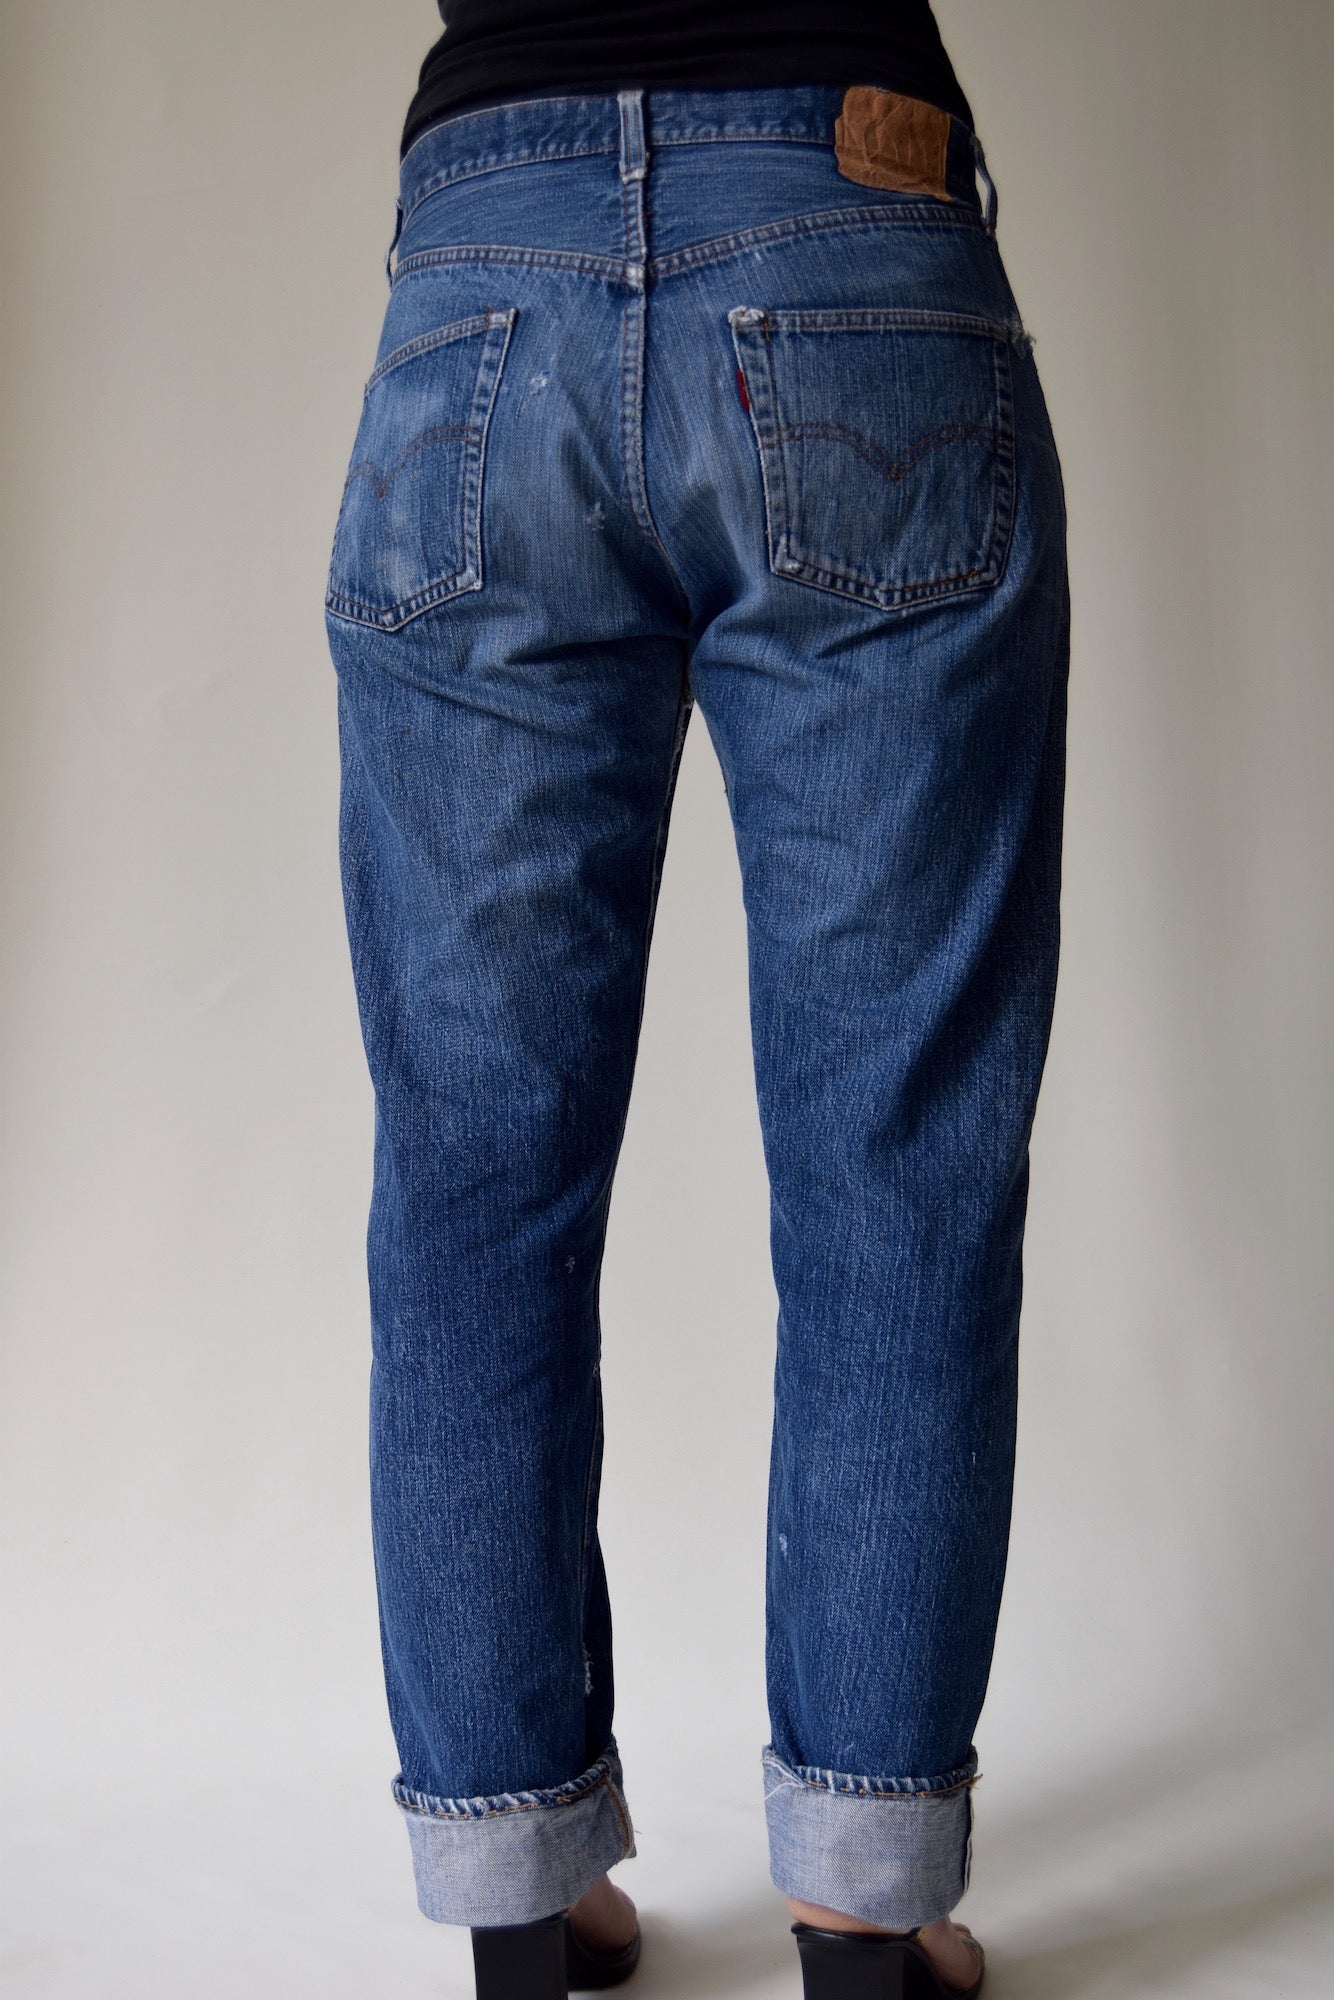 Vintage Levi's Big E 501 Jeans Size 34"